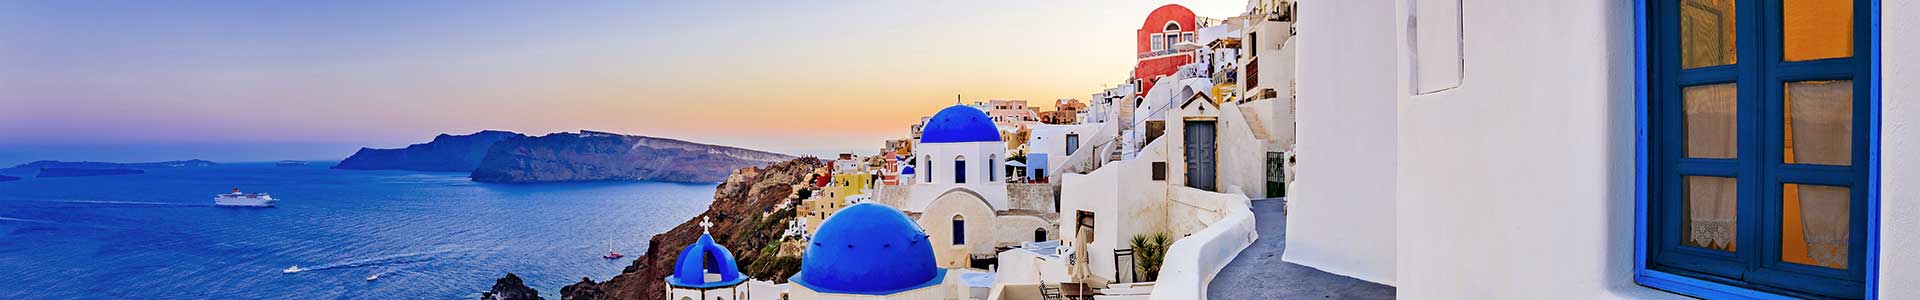 Voyage en Grèce, Crète et îles grecques - TUI